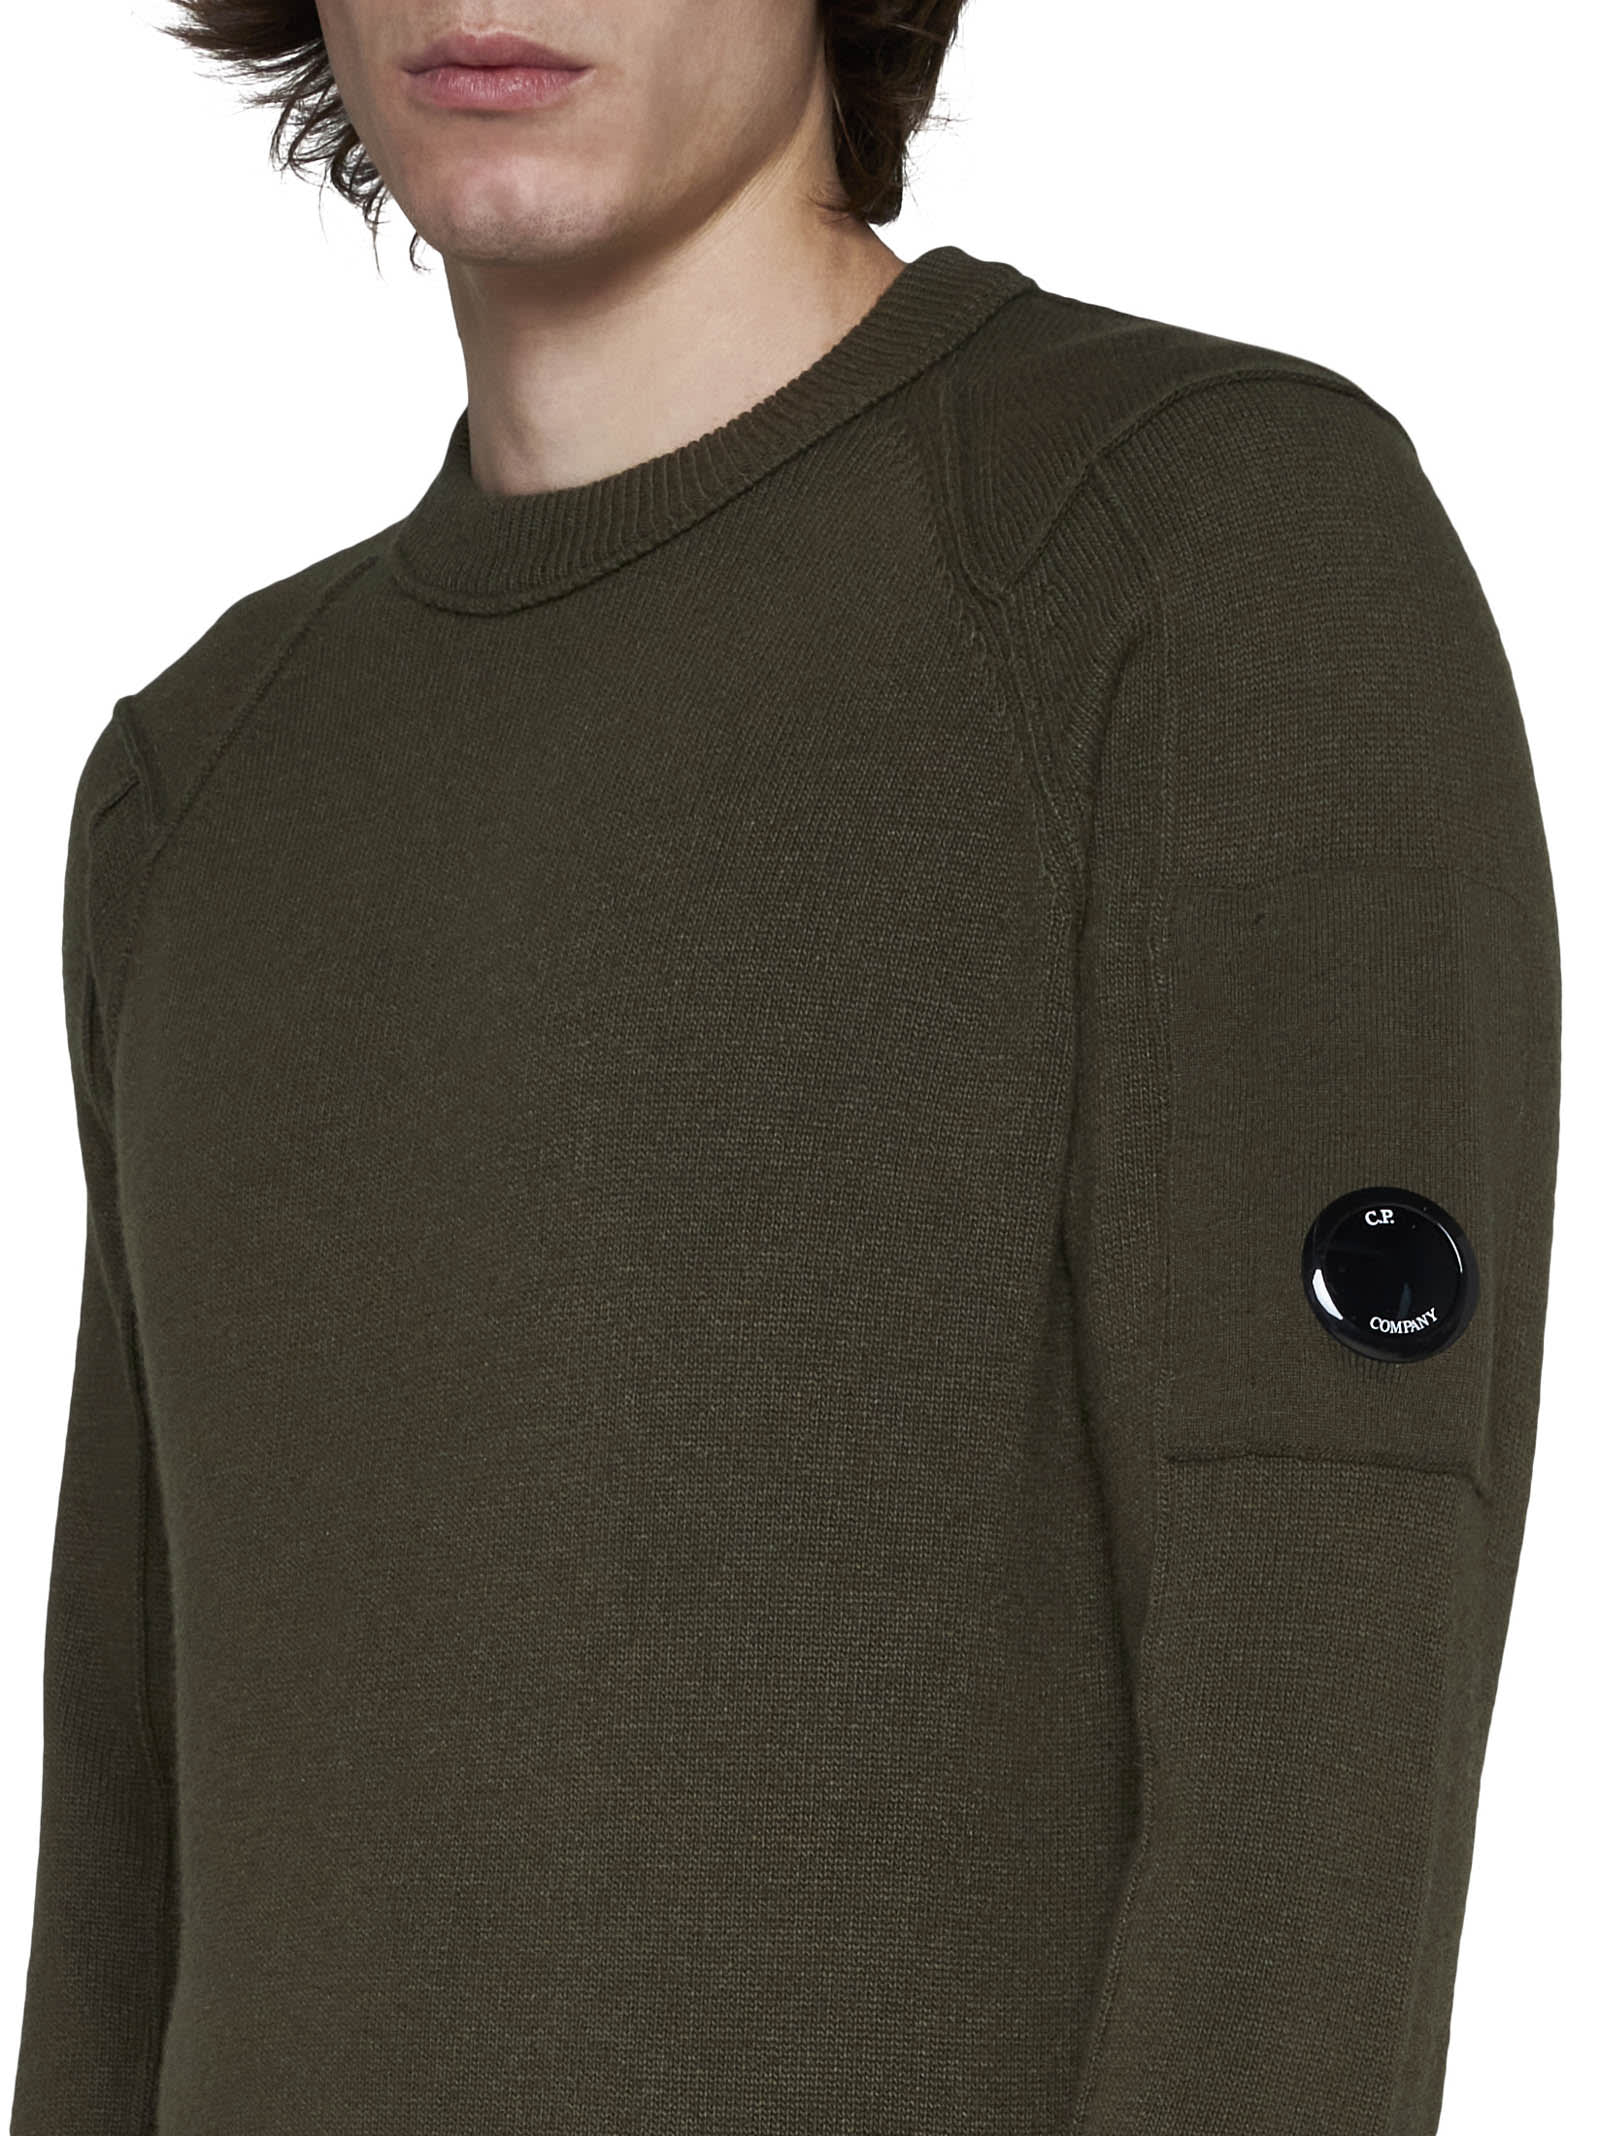 シーピーカンパニー メンズ ニット・セーター アウター Sweater 通販